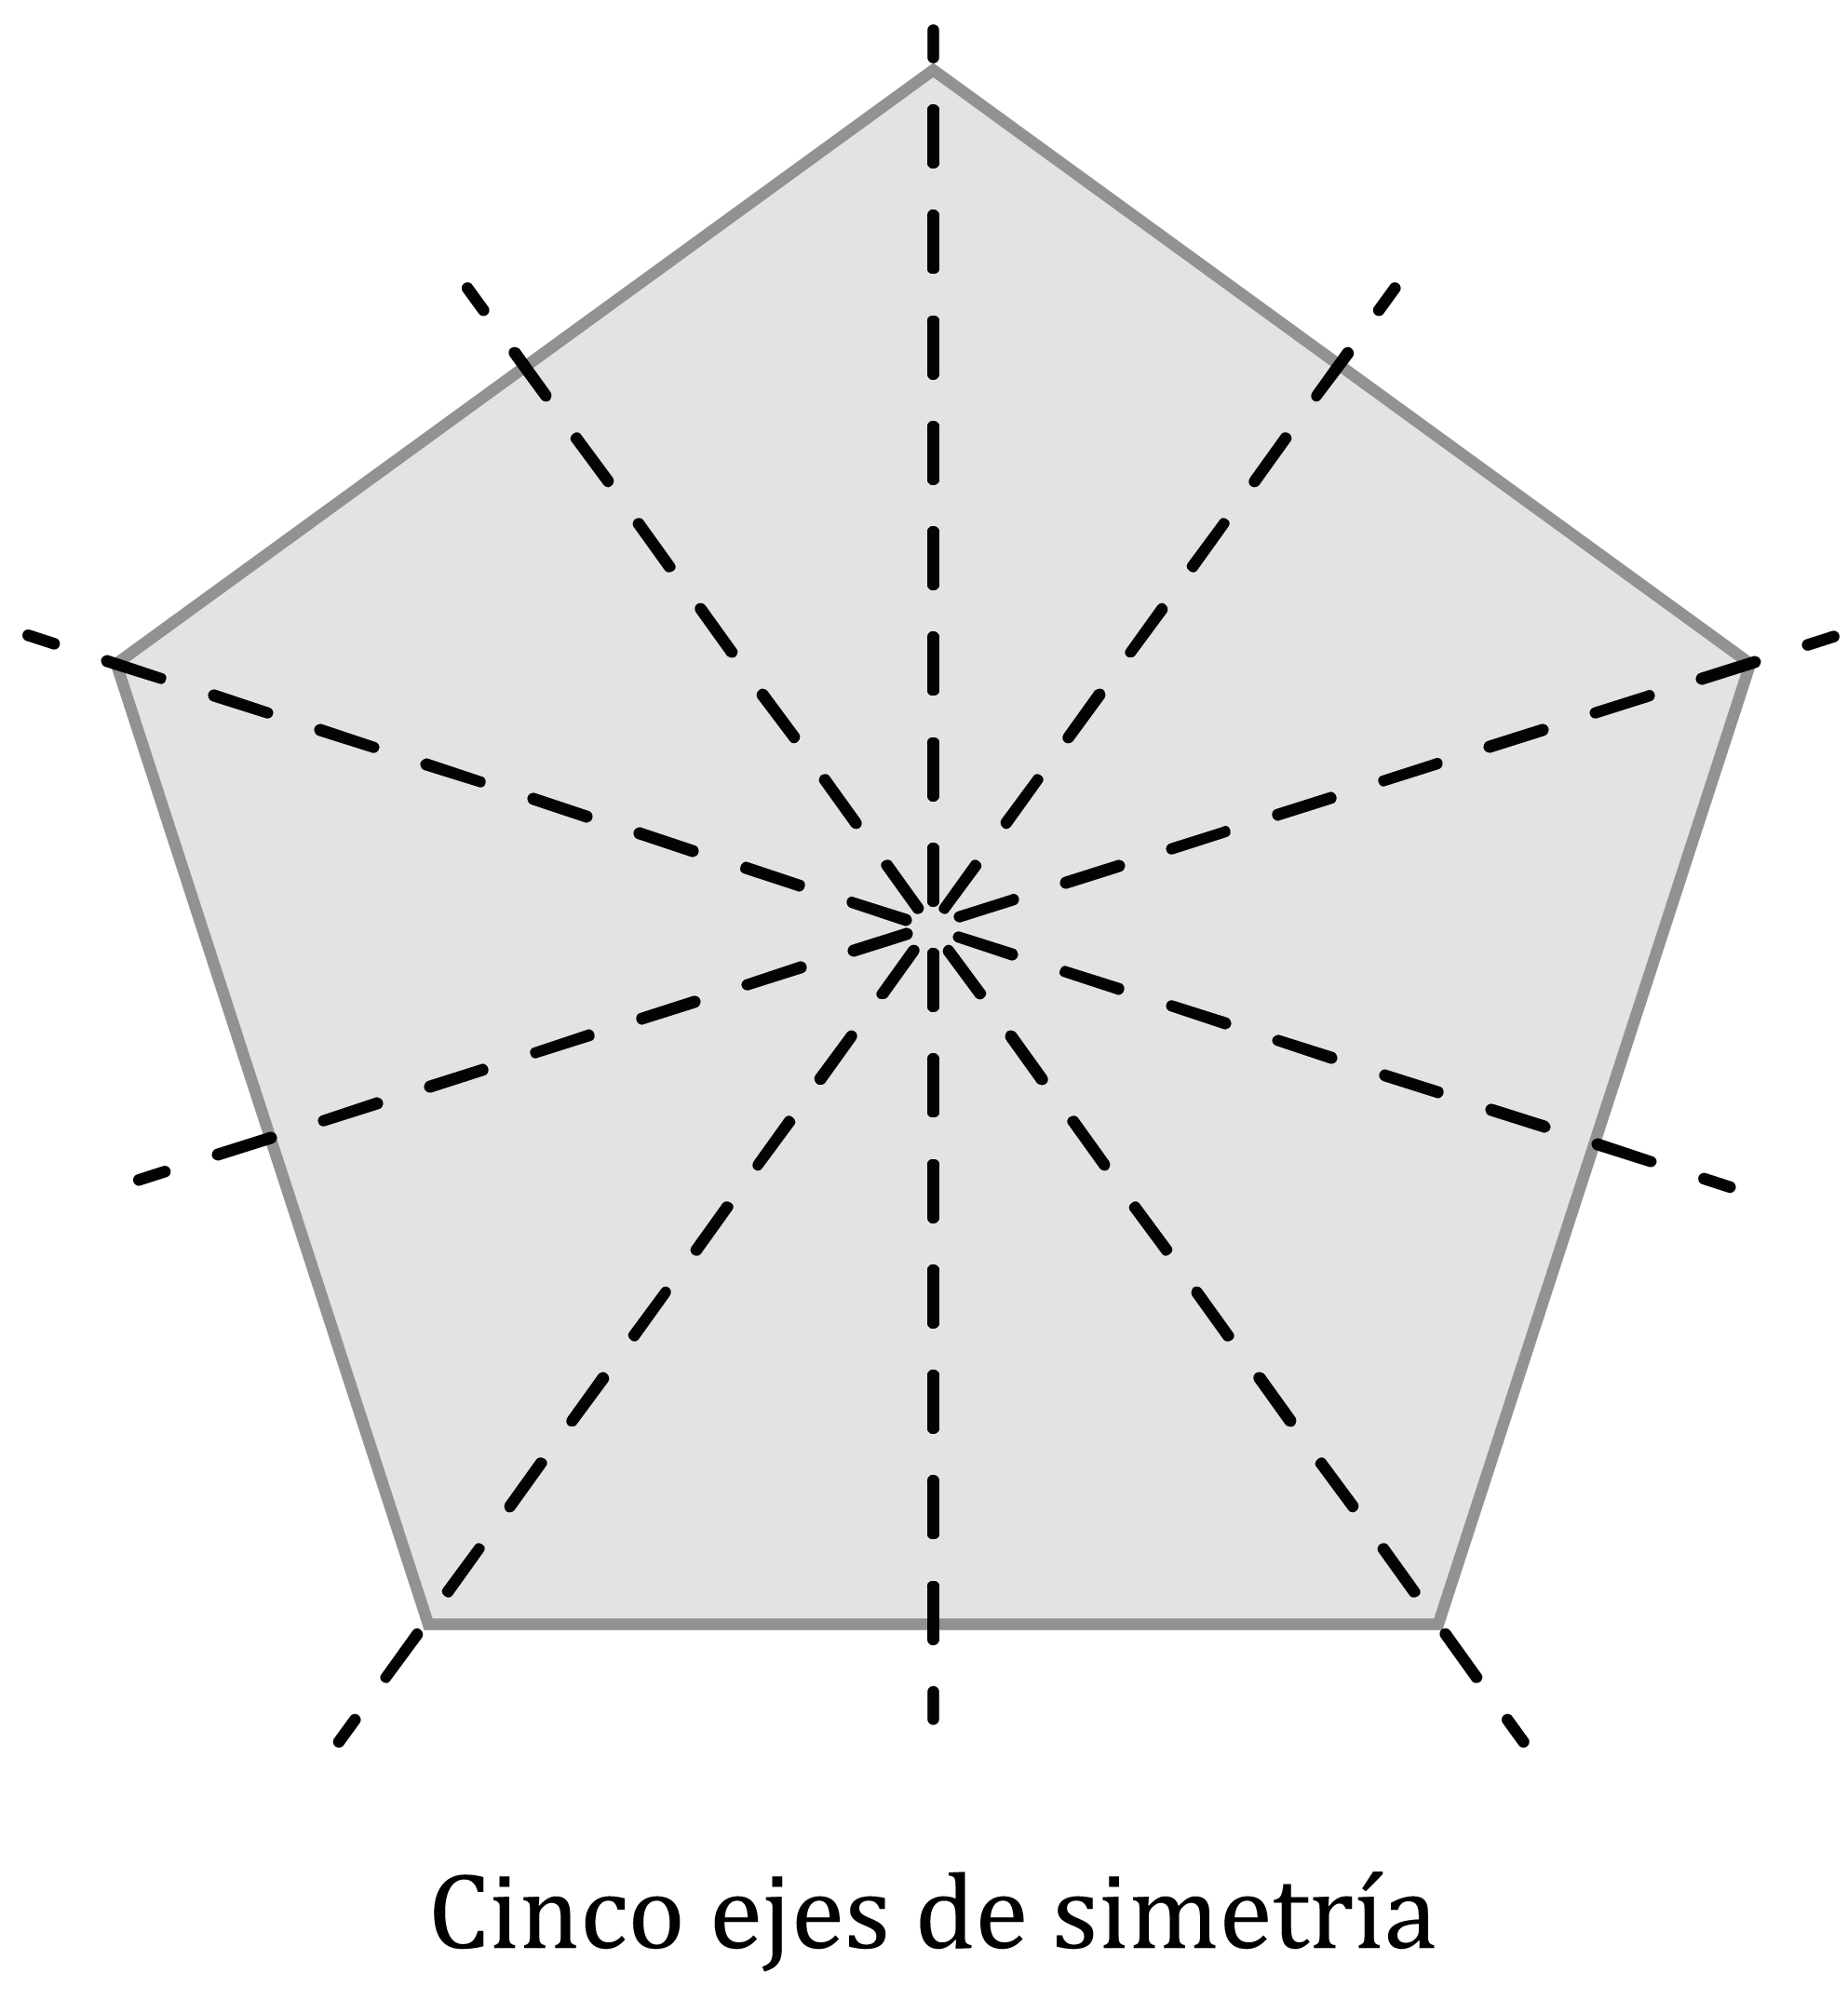 Matemáticas; Transformaciones; 3. ESO; Ejes y centro de simetría en polígonos regulares